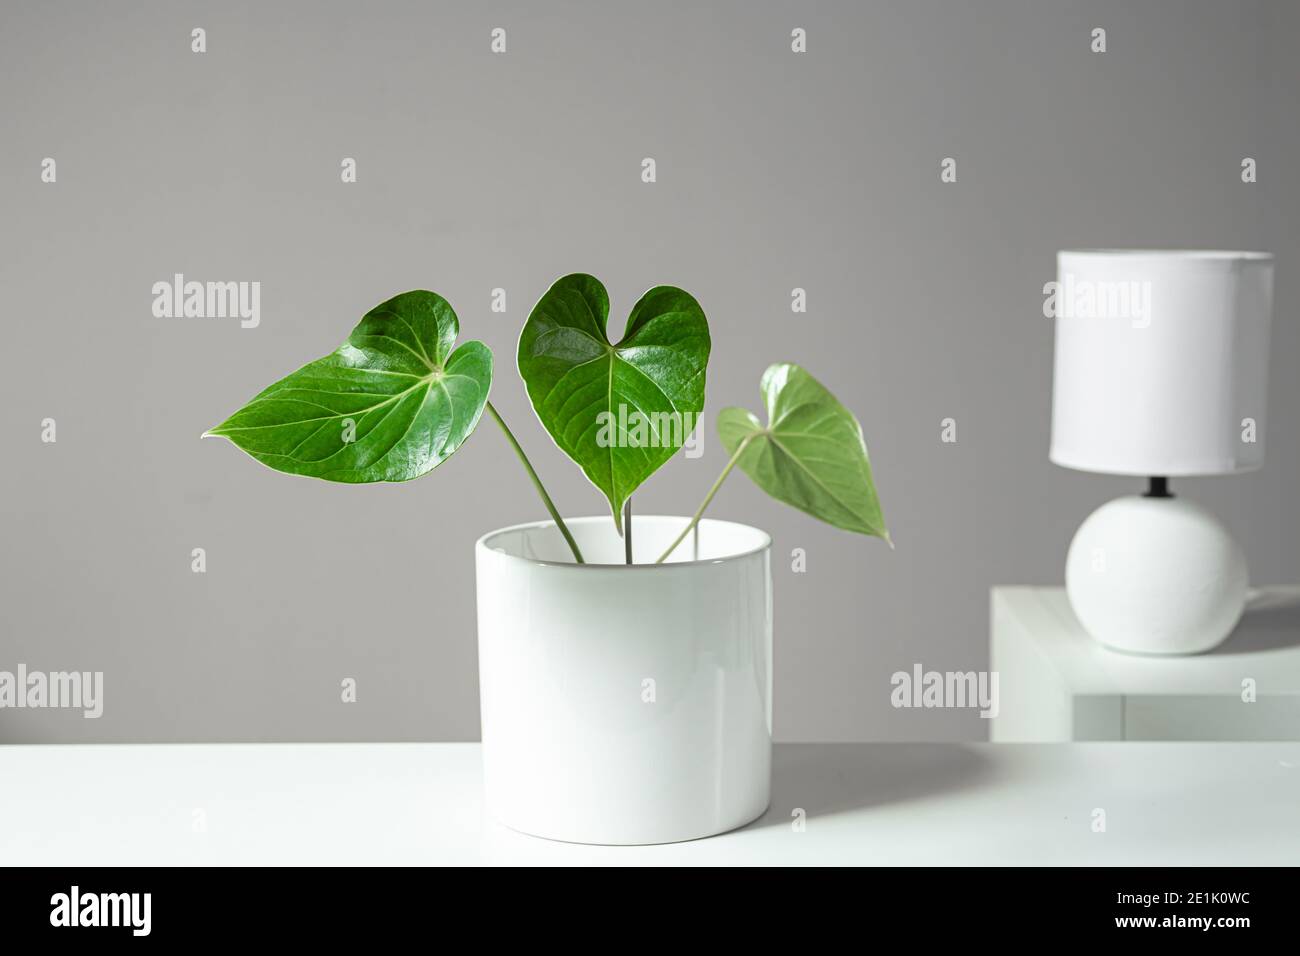 Anthurium planta de hogar verde en la olla blanca y lámpara de mesa blanca en las estanterías blancas, minimalismo y estilo escandinavo Foto de stock